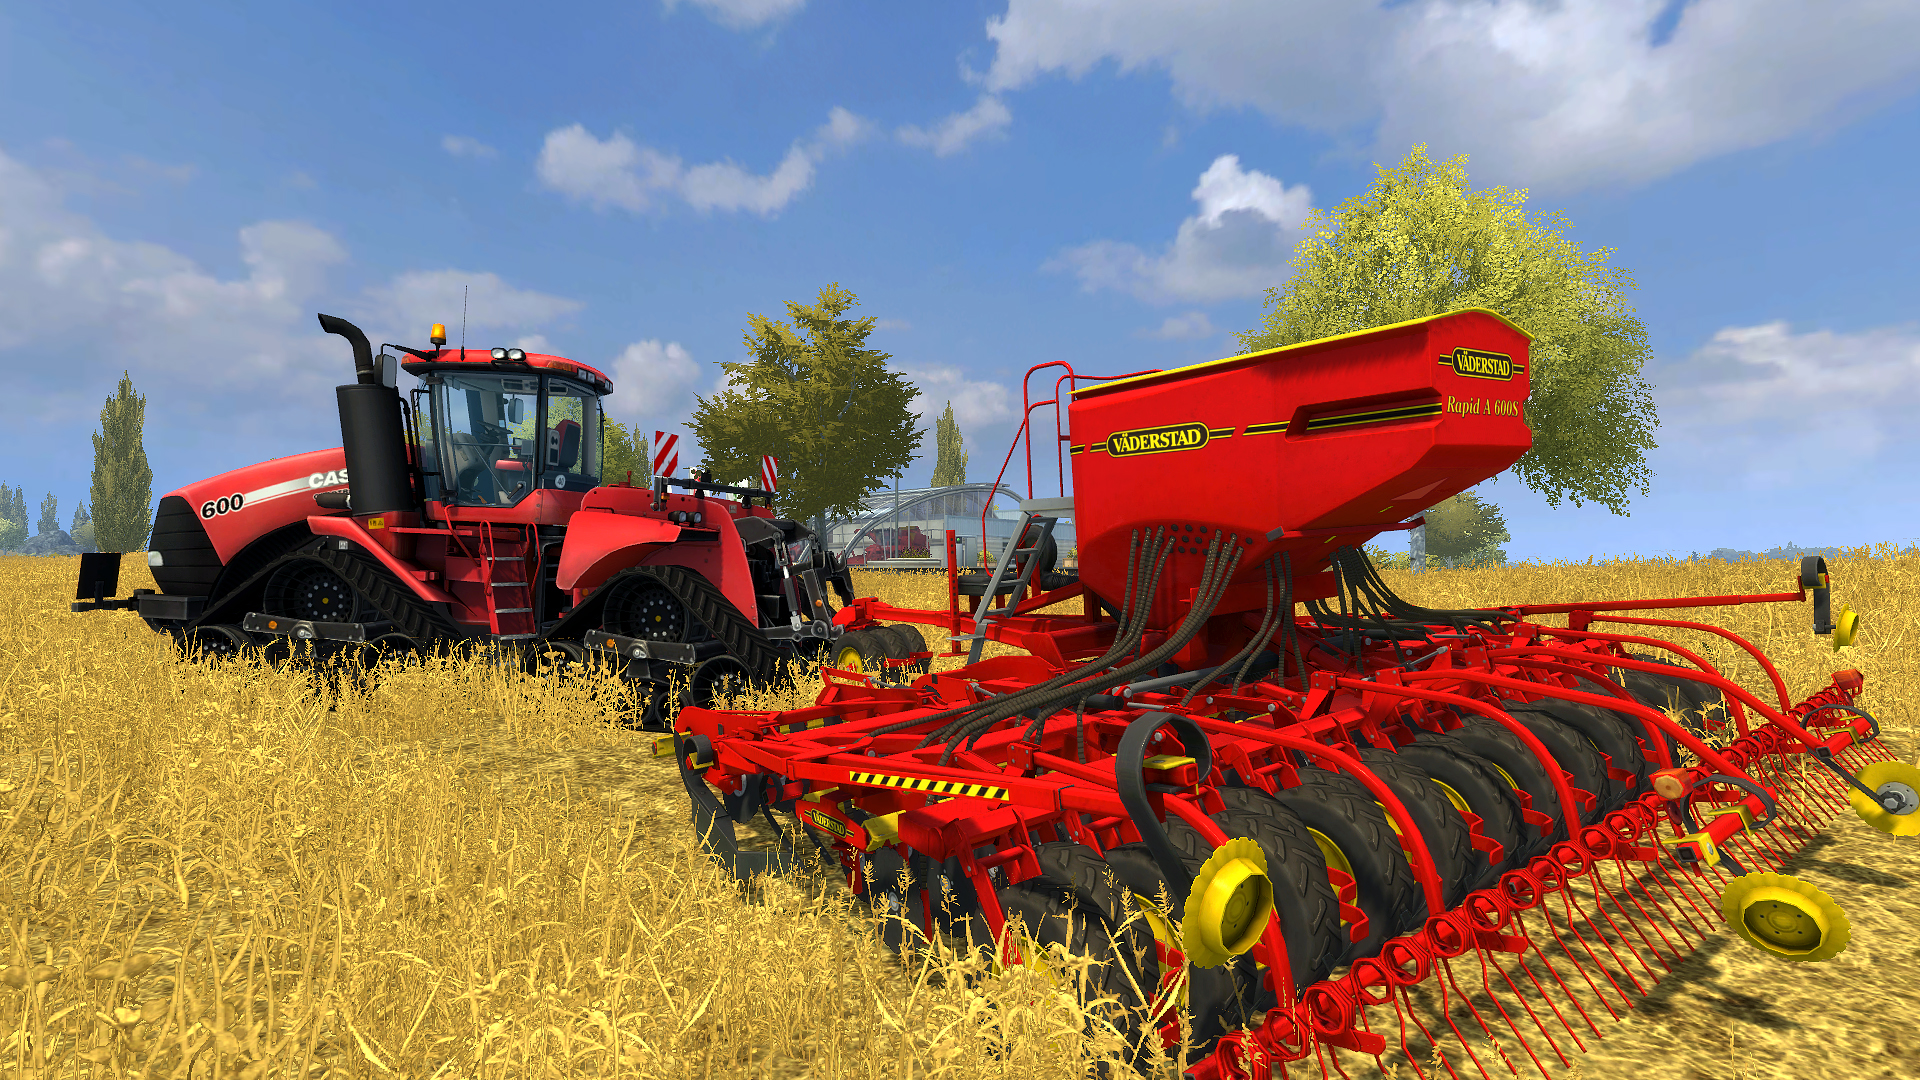 Farming Simulator 2013 - Väderstad DLC Steam CD Key 3.38 $